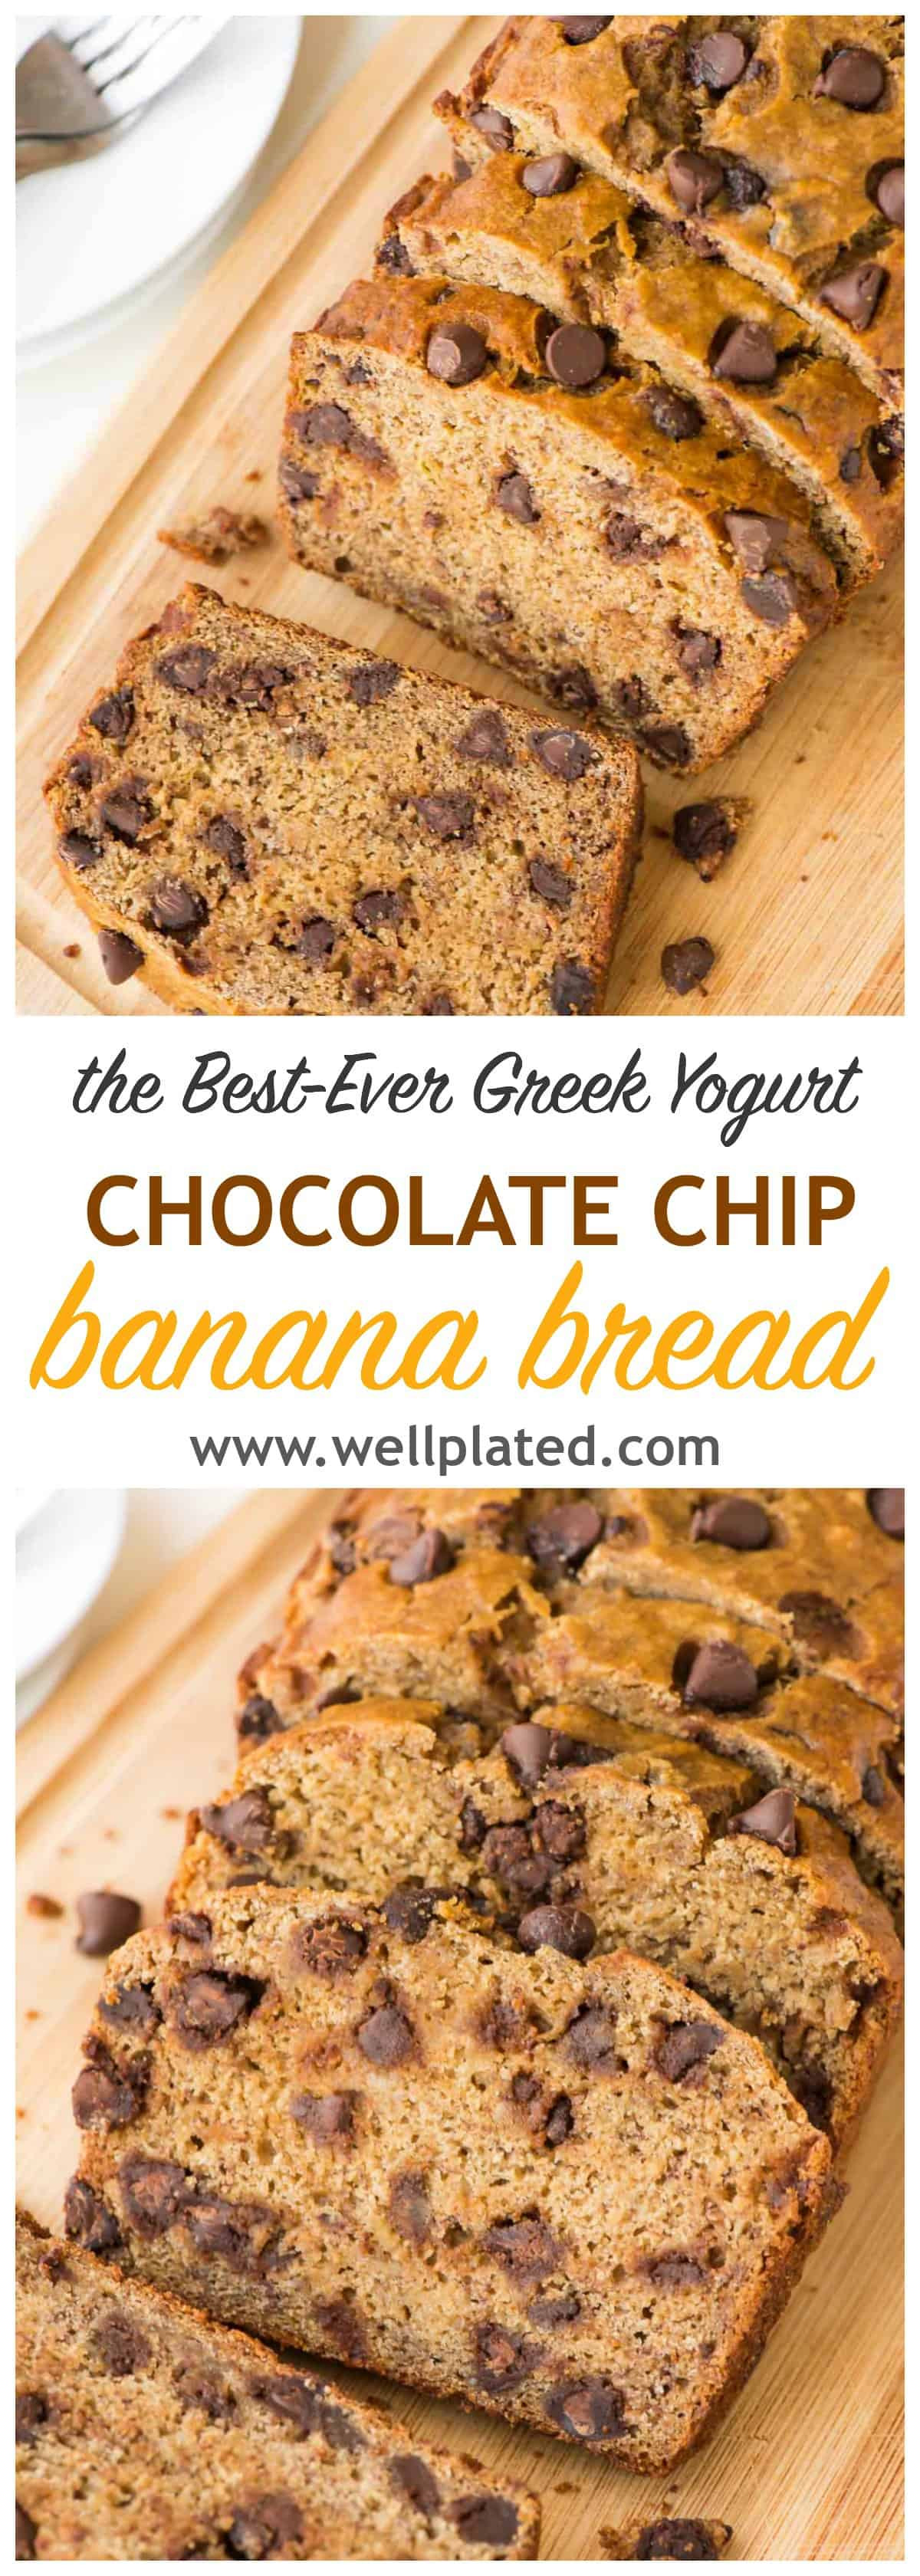 Healthy Moist Banana Bread Recipe
 Healthy Banana Bread Recipe with Chocolate Chips